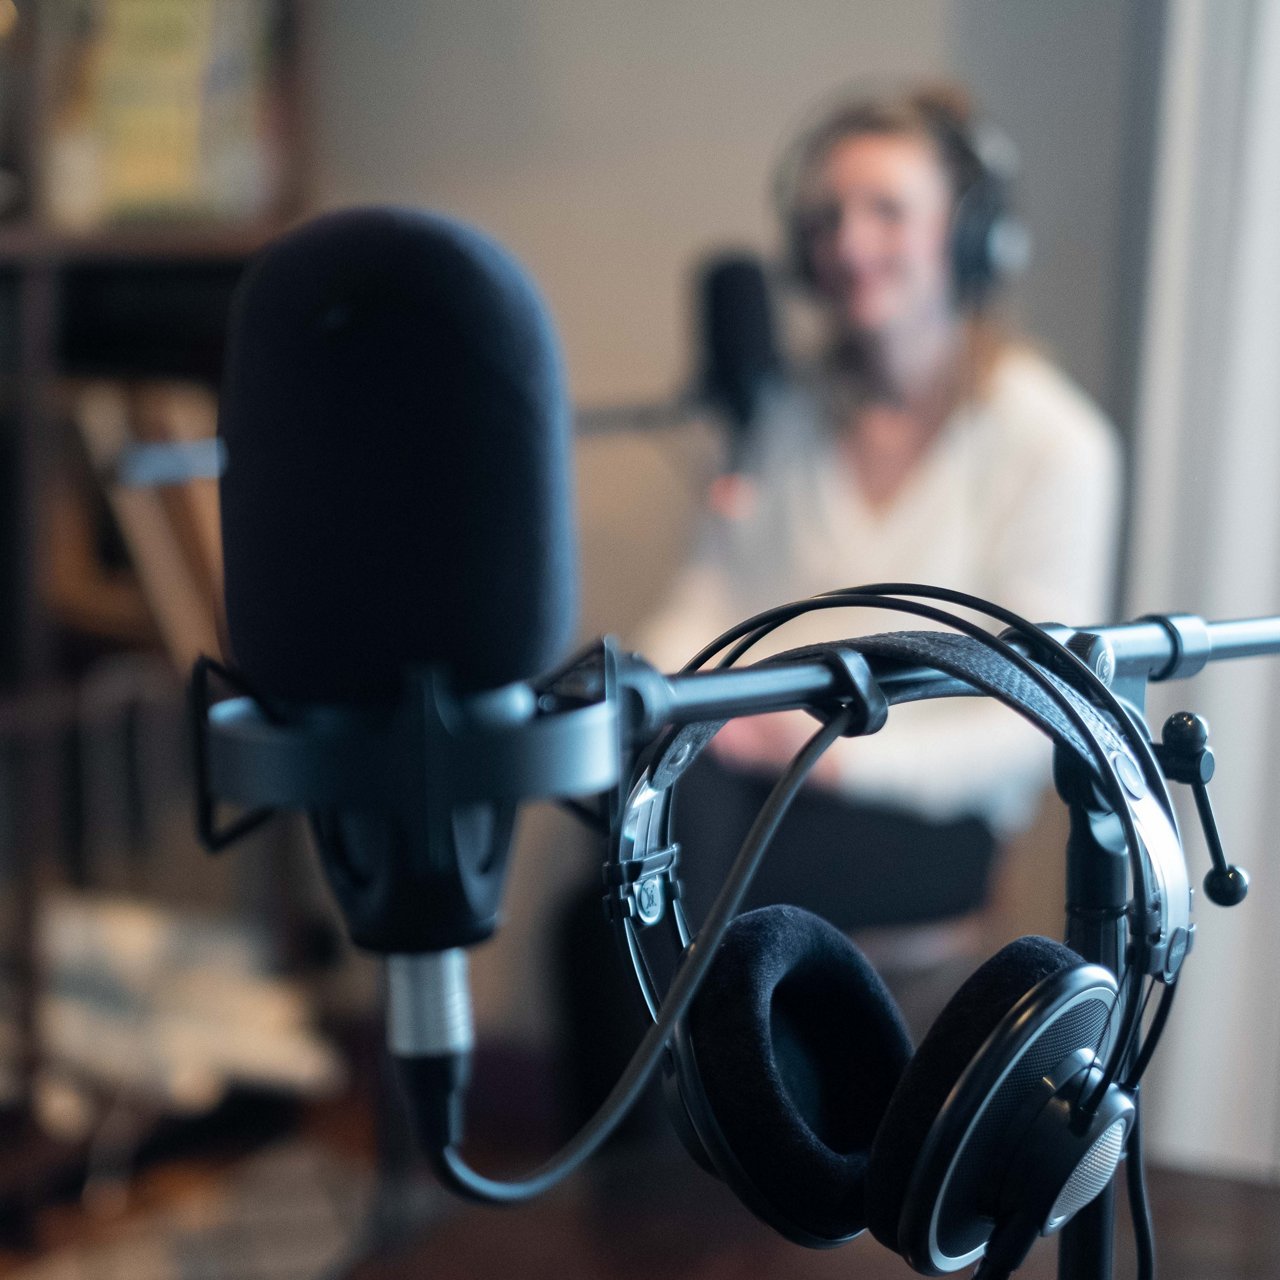 Gesundheitspodcast Bitte freimachen Staffel 3 Ärztin am Mikrofon mit Kopfhörern